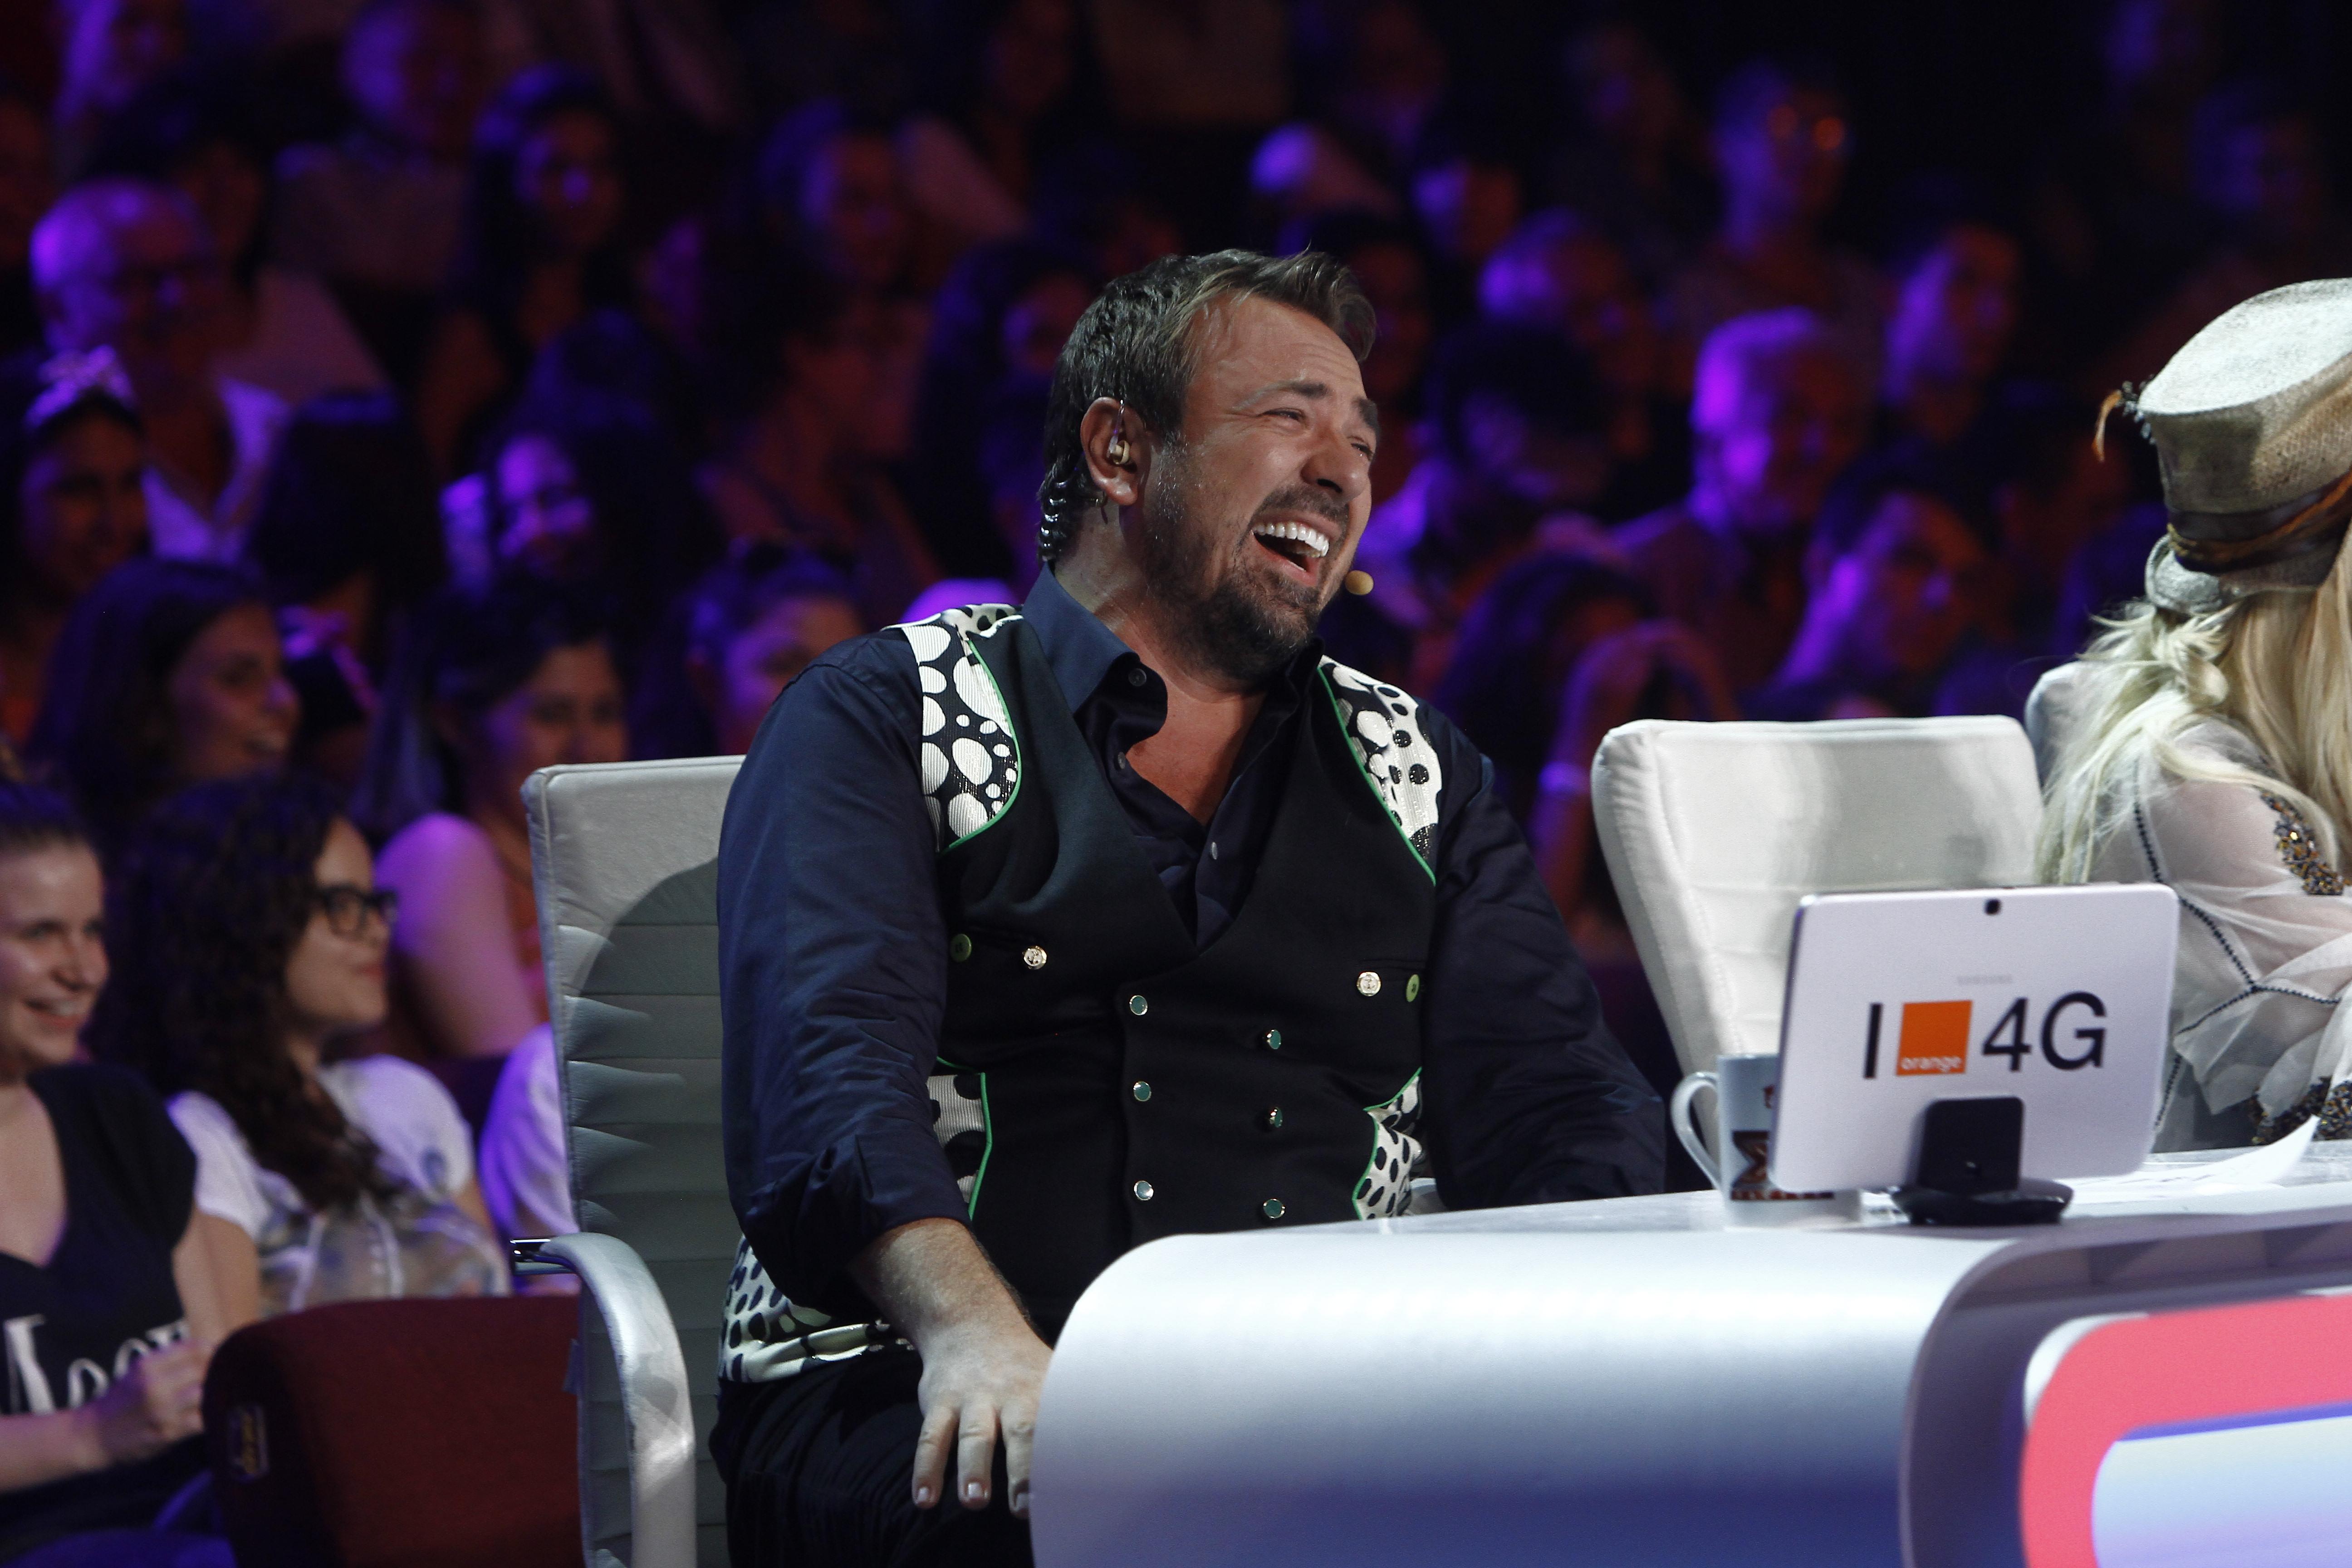 Hoopaaa! Horia Brenciu, invitat acasă de una dintre concurentele „X Factor”! Cine a avut atâta curaj?